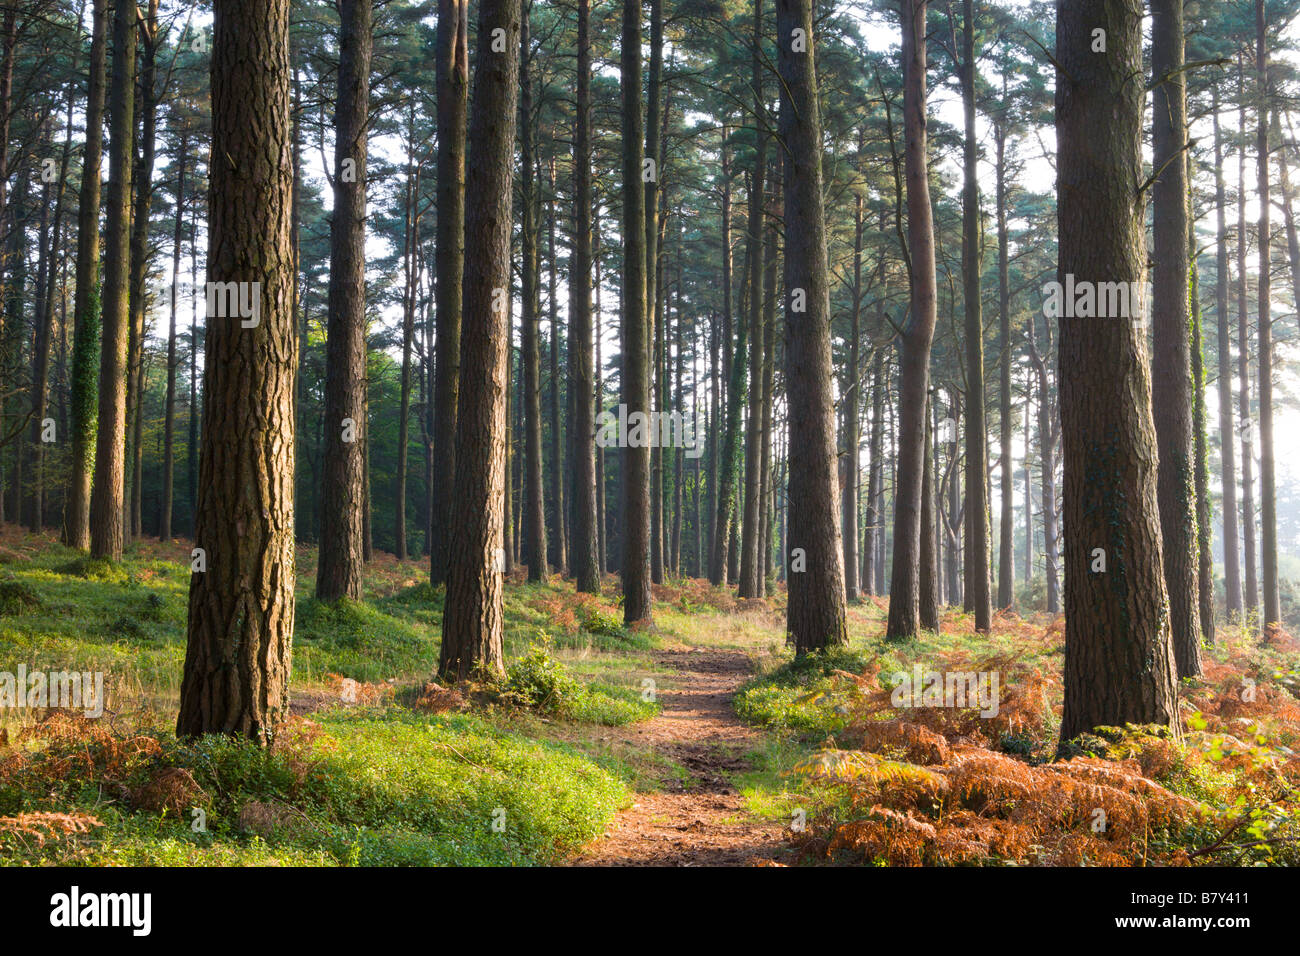 Sentier menant à travers une forêt de pins dans le Parc National d'Exmoor Automne Angleterre Somerset Banque D'Images